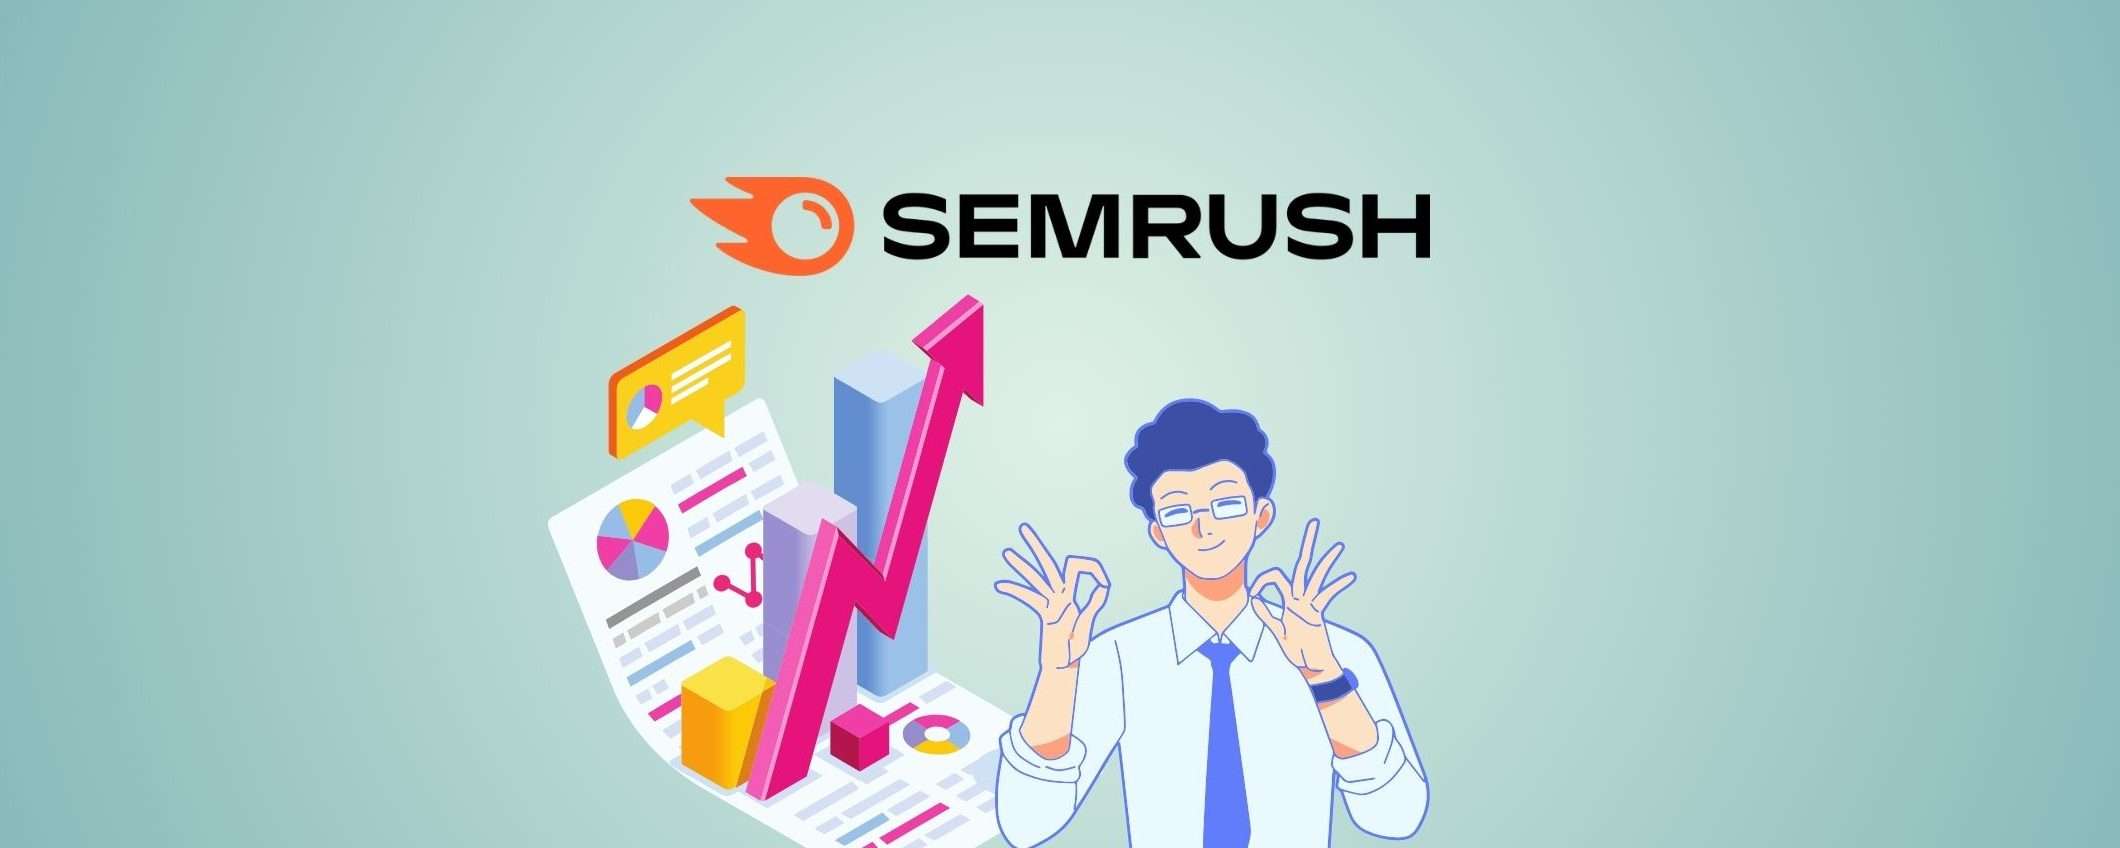 Semrush: prova gratuita per far crescere il tuo business